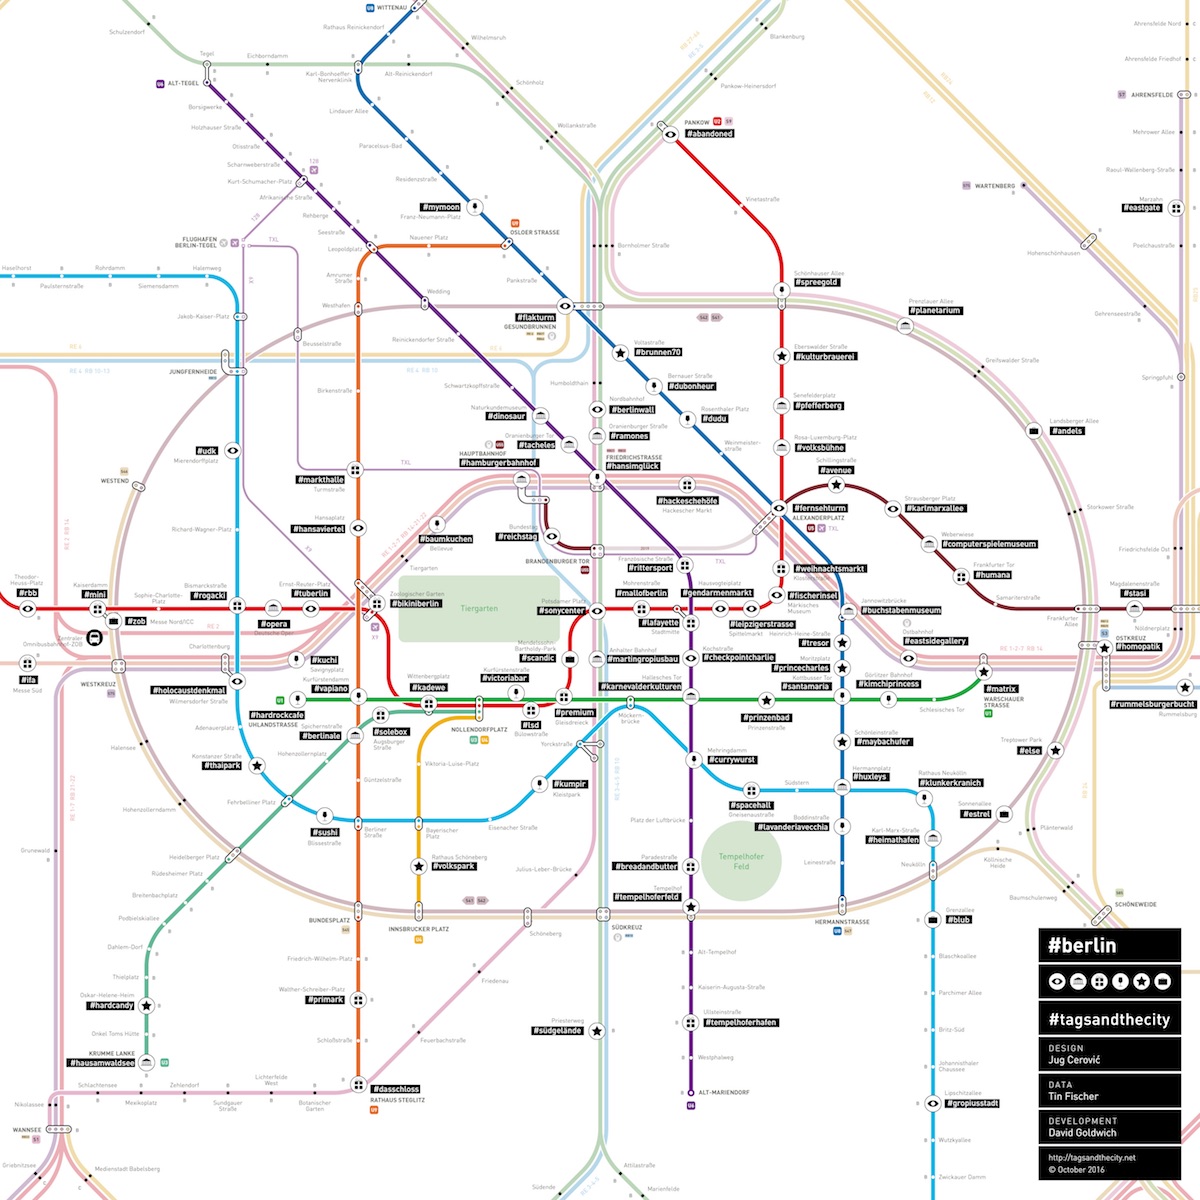 Ein BVG-Netzplan mit den wichtigsten Hashtags zu den jeweiligen U-Bahn-Stationen